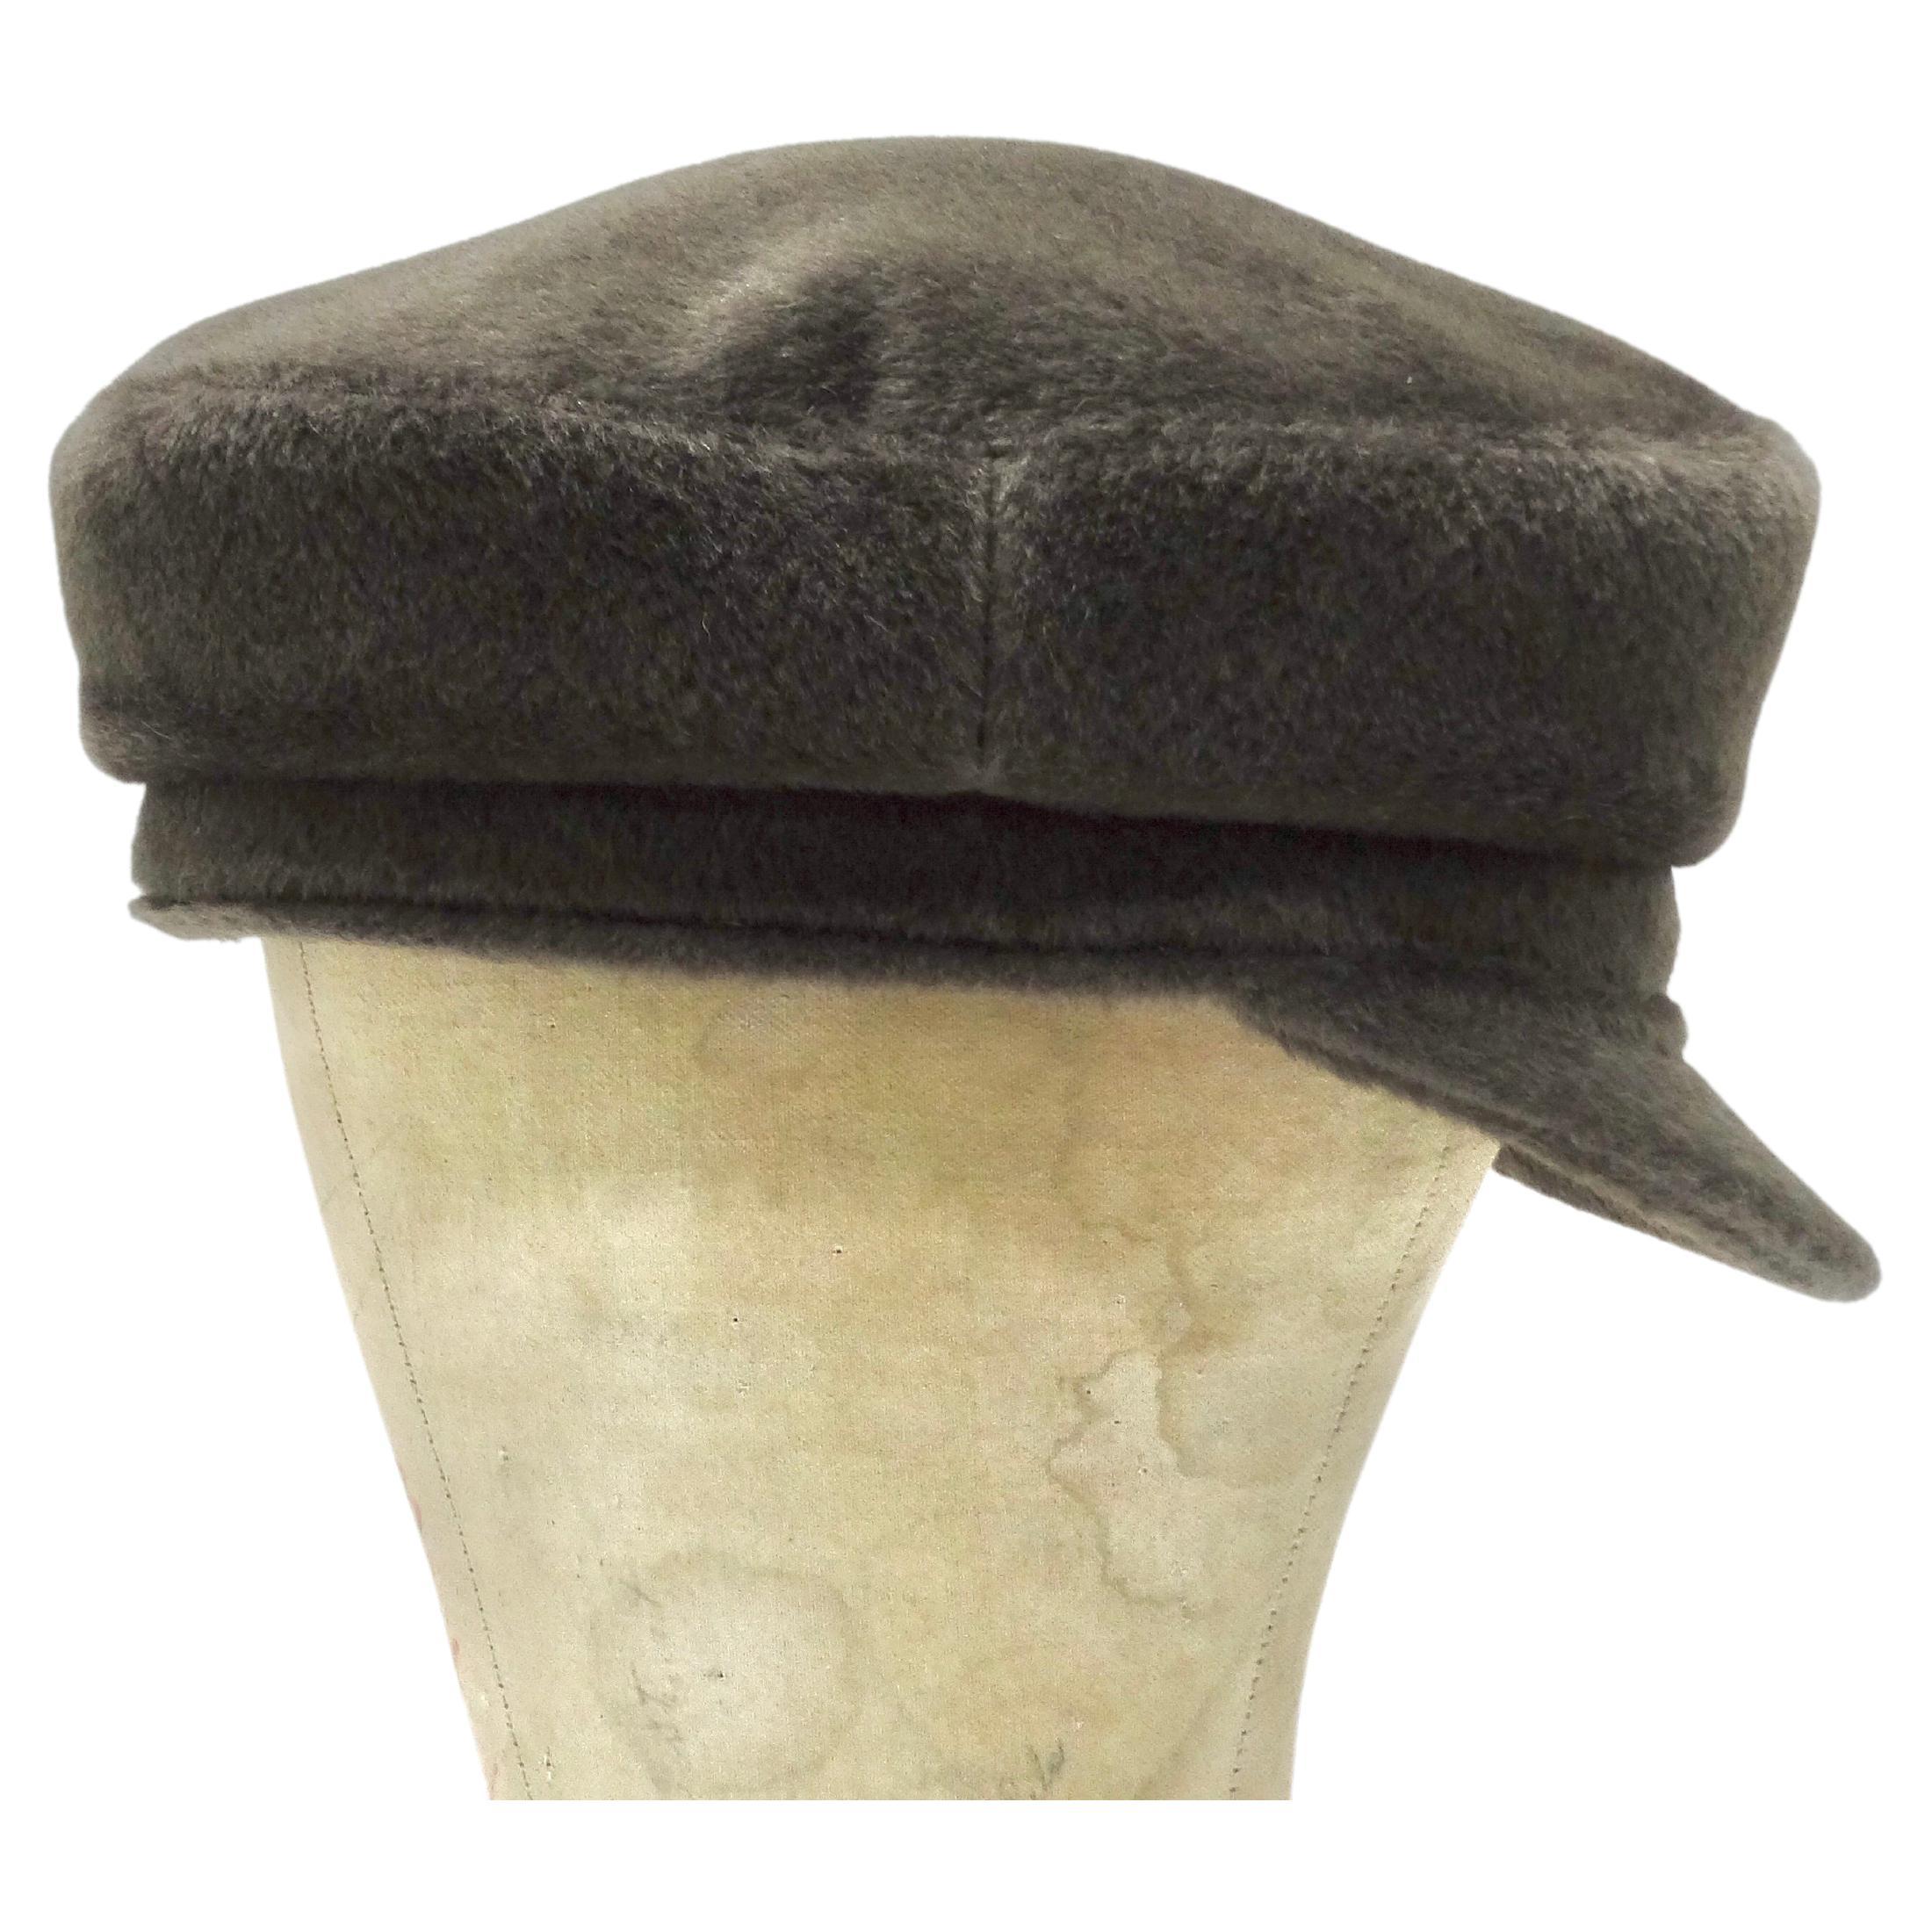 Commandez votre garde-robe avec ce chapeau de pêcheur en laine Hermès. Ce chapeau en laine et soie mélangées est parfait pour les festivités d'hiver et d'automne. Il vous offrira la chaleur et le confort dont vous avez besoin pour les mois d'hiver,